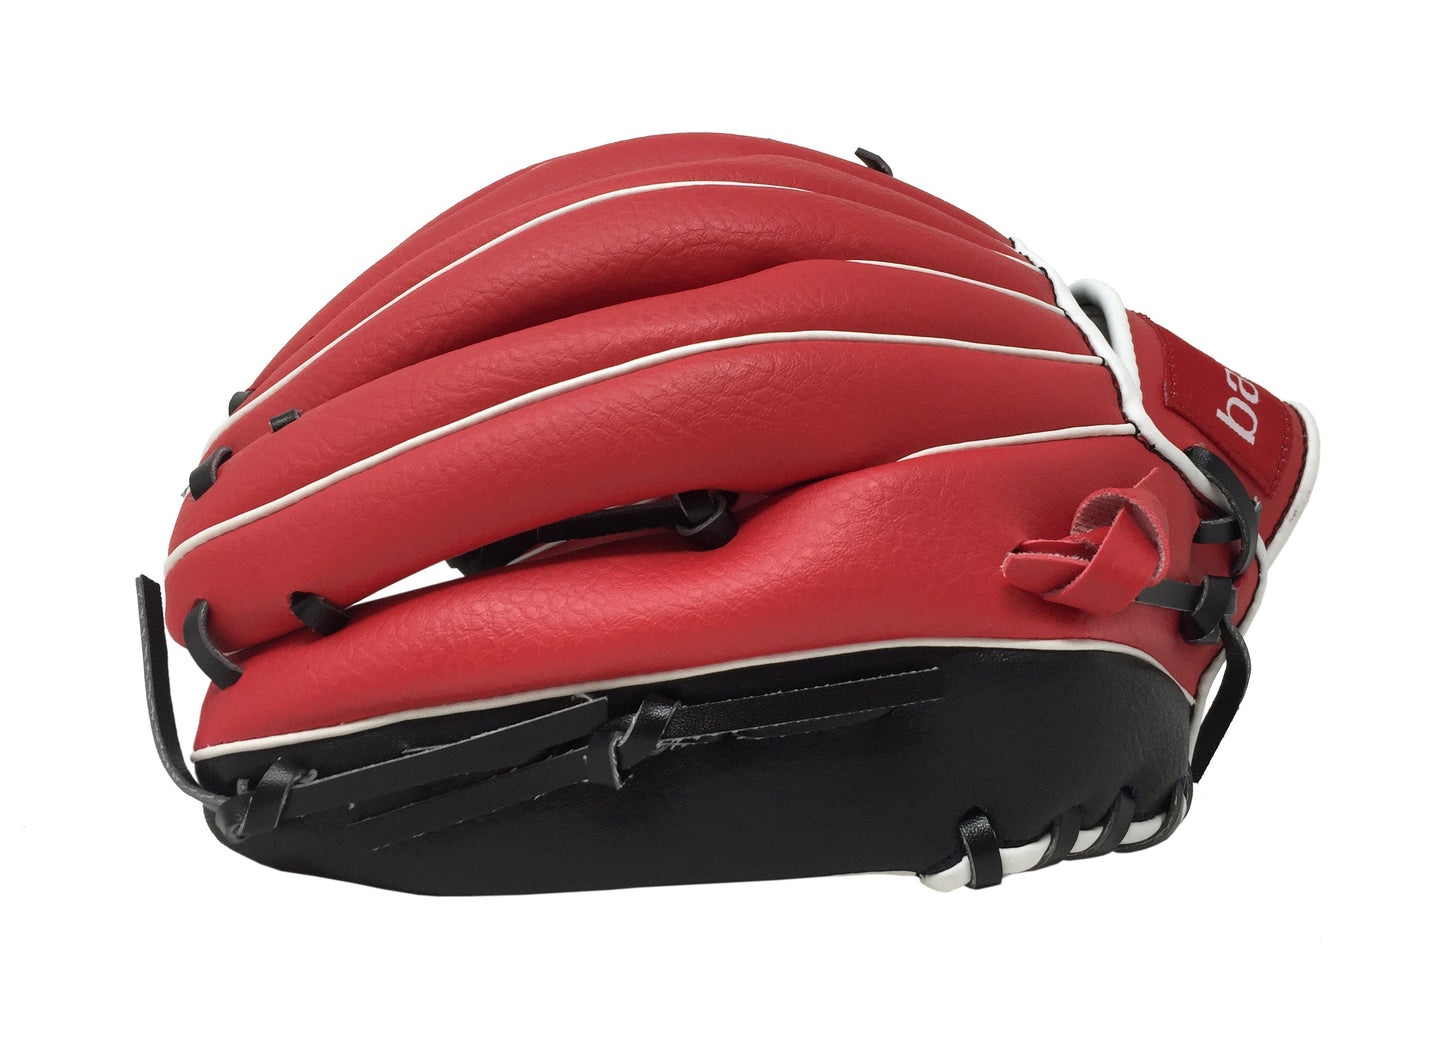 JL-120 - gant de baseball, champ extérieur, polyuréthane, taille 12,5" rouge